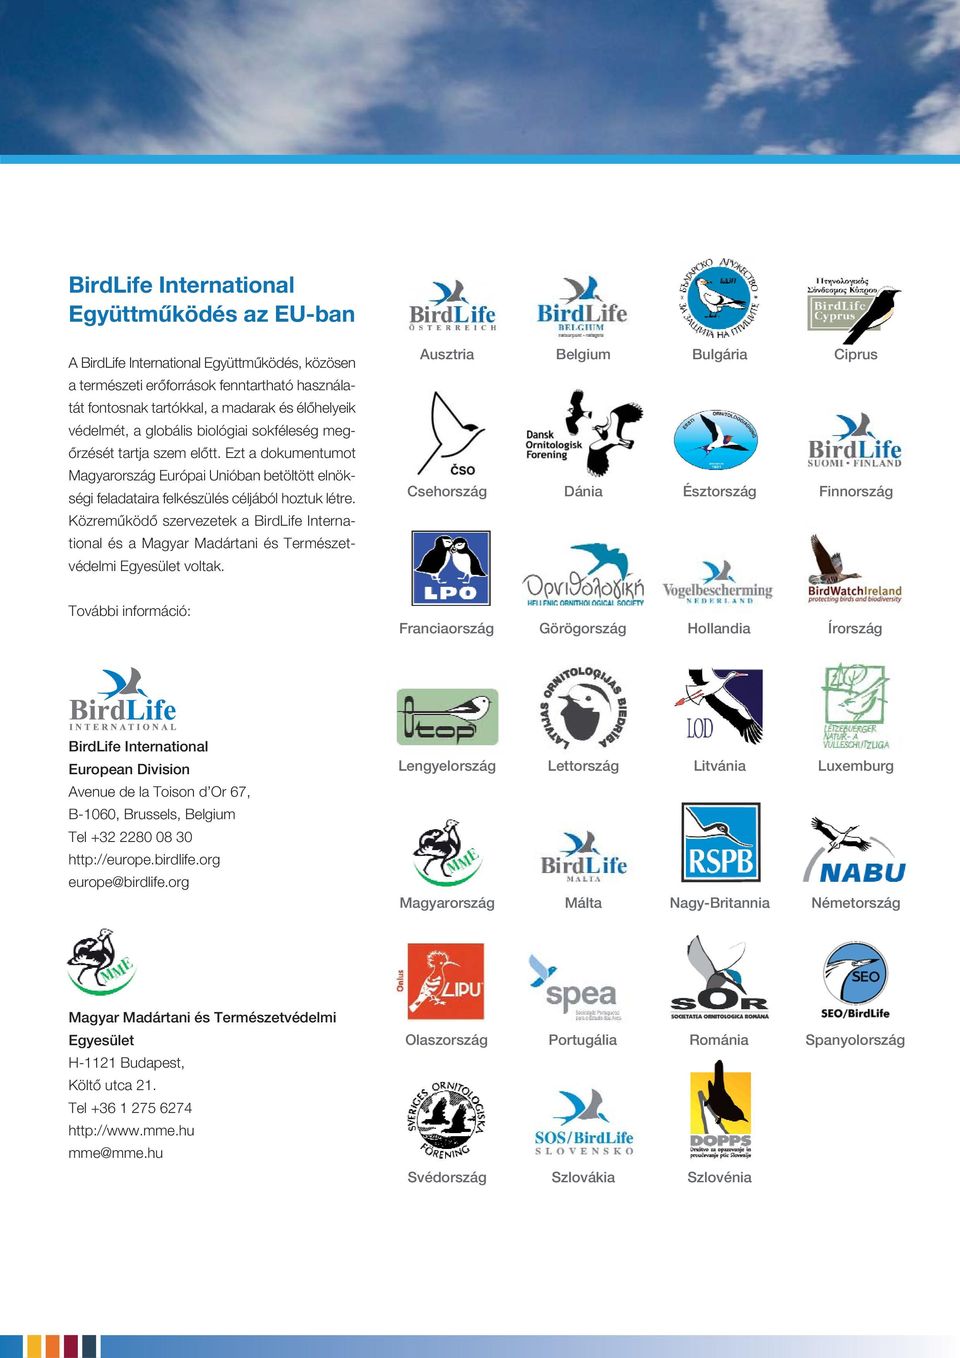 Közremûködô szervezetek a BirdLife International és a Magyar Madártani és Természetvédelmi Egyesület voltak.